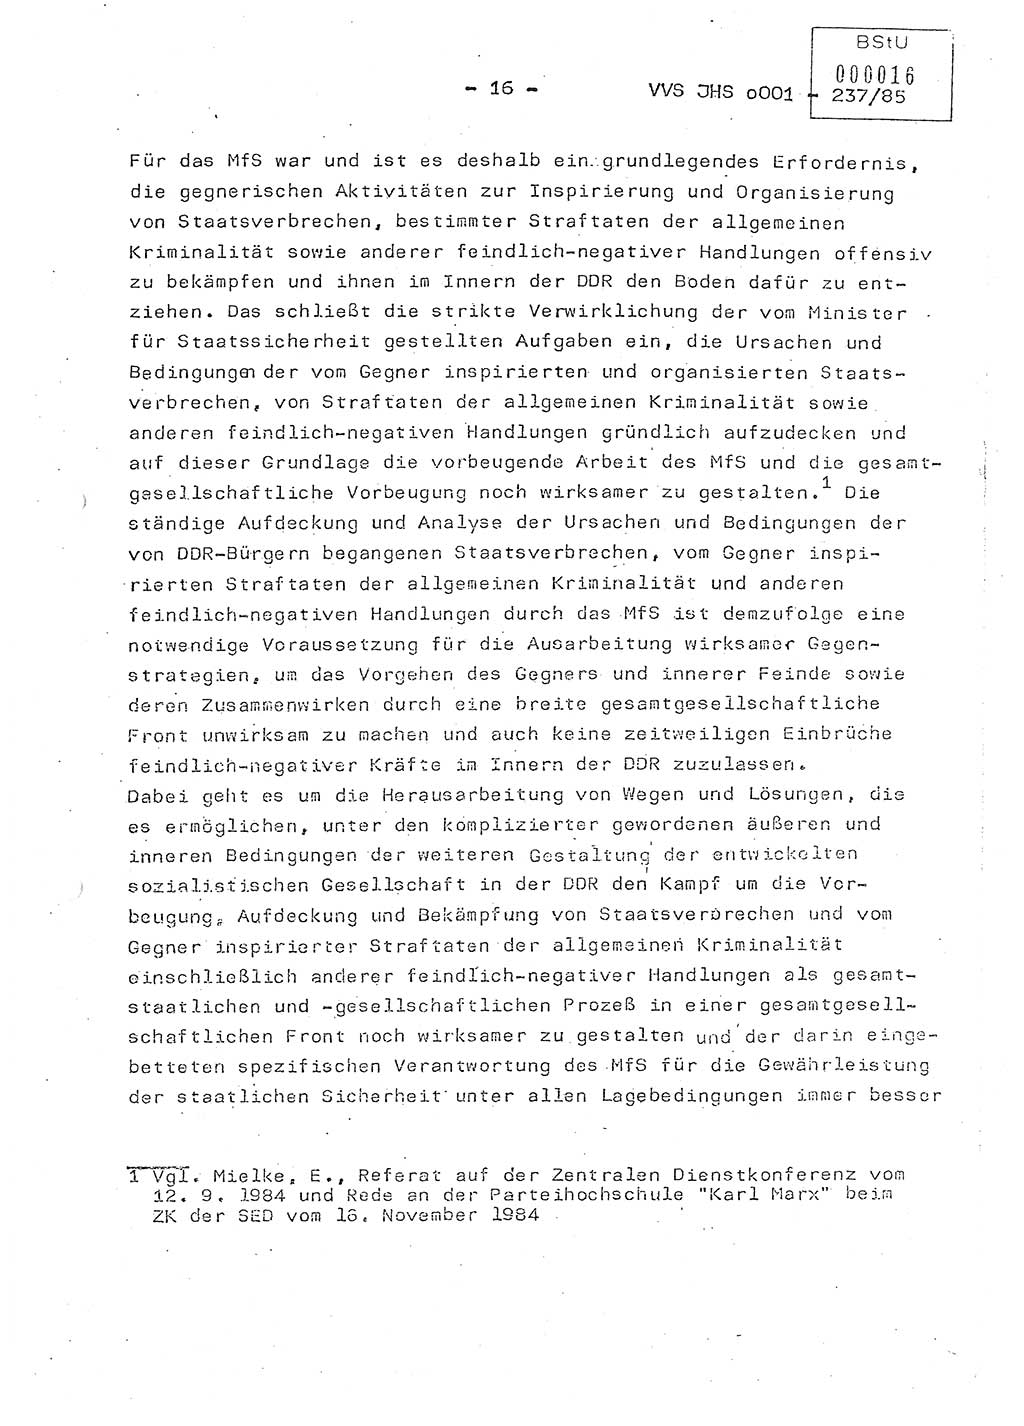 Dissertation Oberstleutnant Peter Jakulski (JHS), Oberstleutnat Christian Rudolph (HA Ⅸ), Major Horst Böttger (ZMD), Major Wolfgang Grüneberg (JHS), Major Albert Meutsch (JHS), Ministerium für Staatssicherheit (MfS) [Deutsche Demokratische Republik (DDR)], Juristische Hochschule (JHS), Vertrauliche Verschlußsache (VVS) o001-237/85, Potsdam 1985, Seite 16 (Diss. MfS DDR JHS VVS o001-237/85 1985, S. 16)